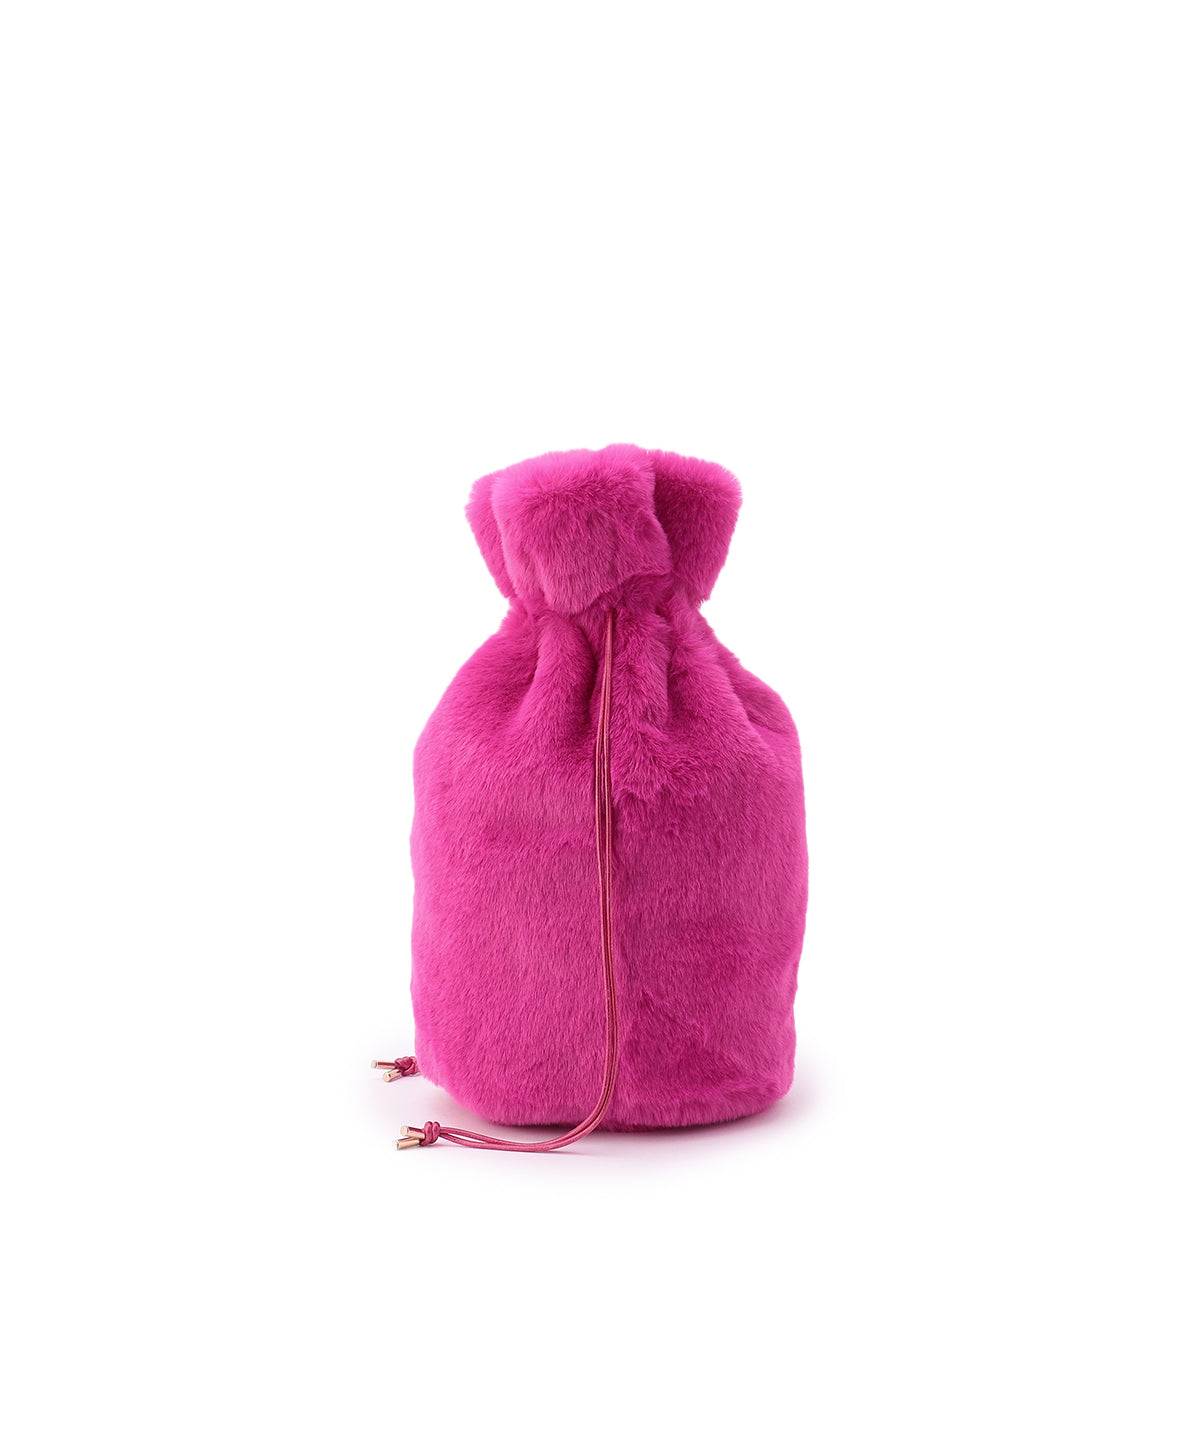 Eco Fur Drawstring Bag(Medium)PINK